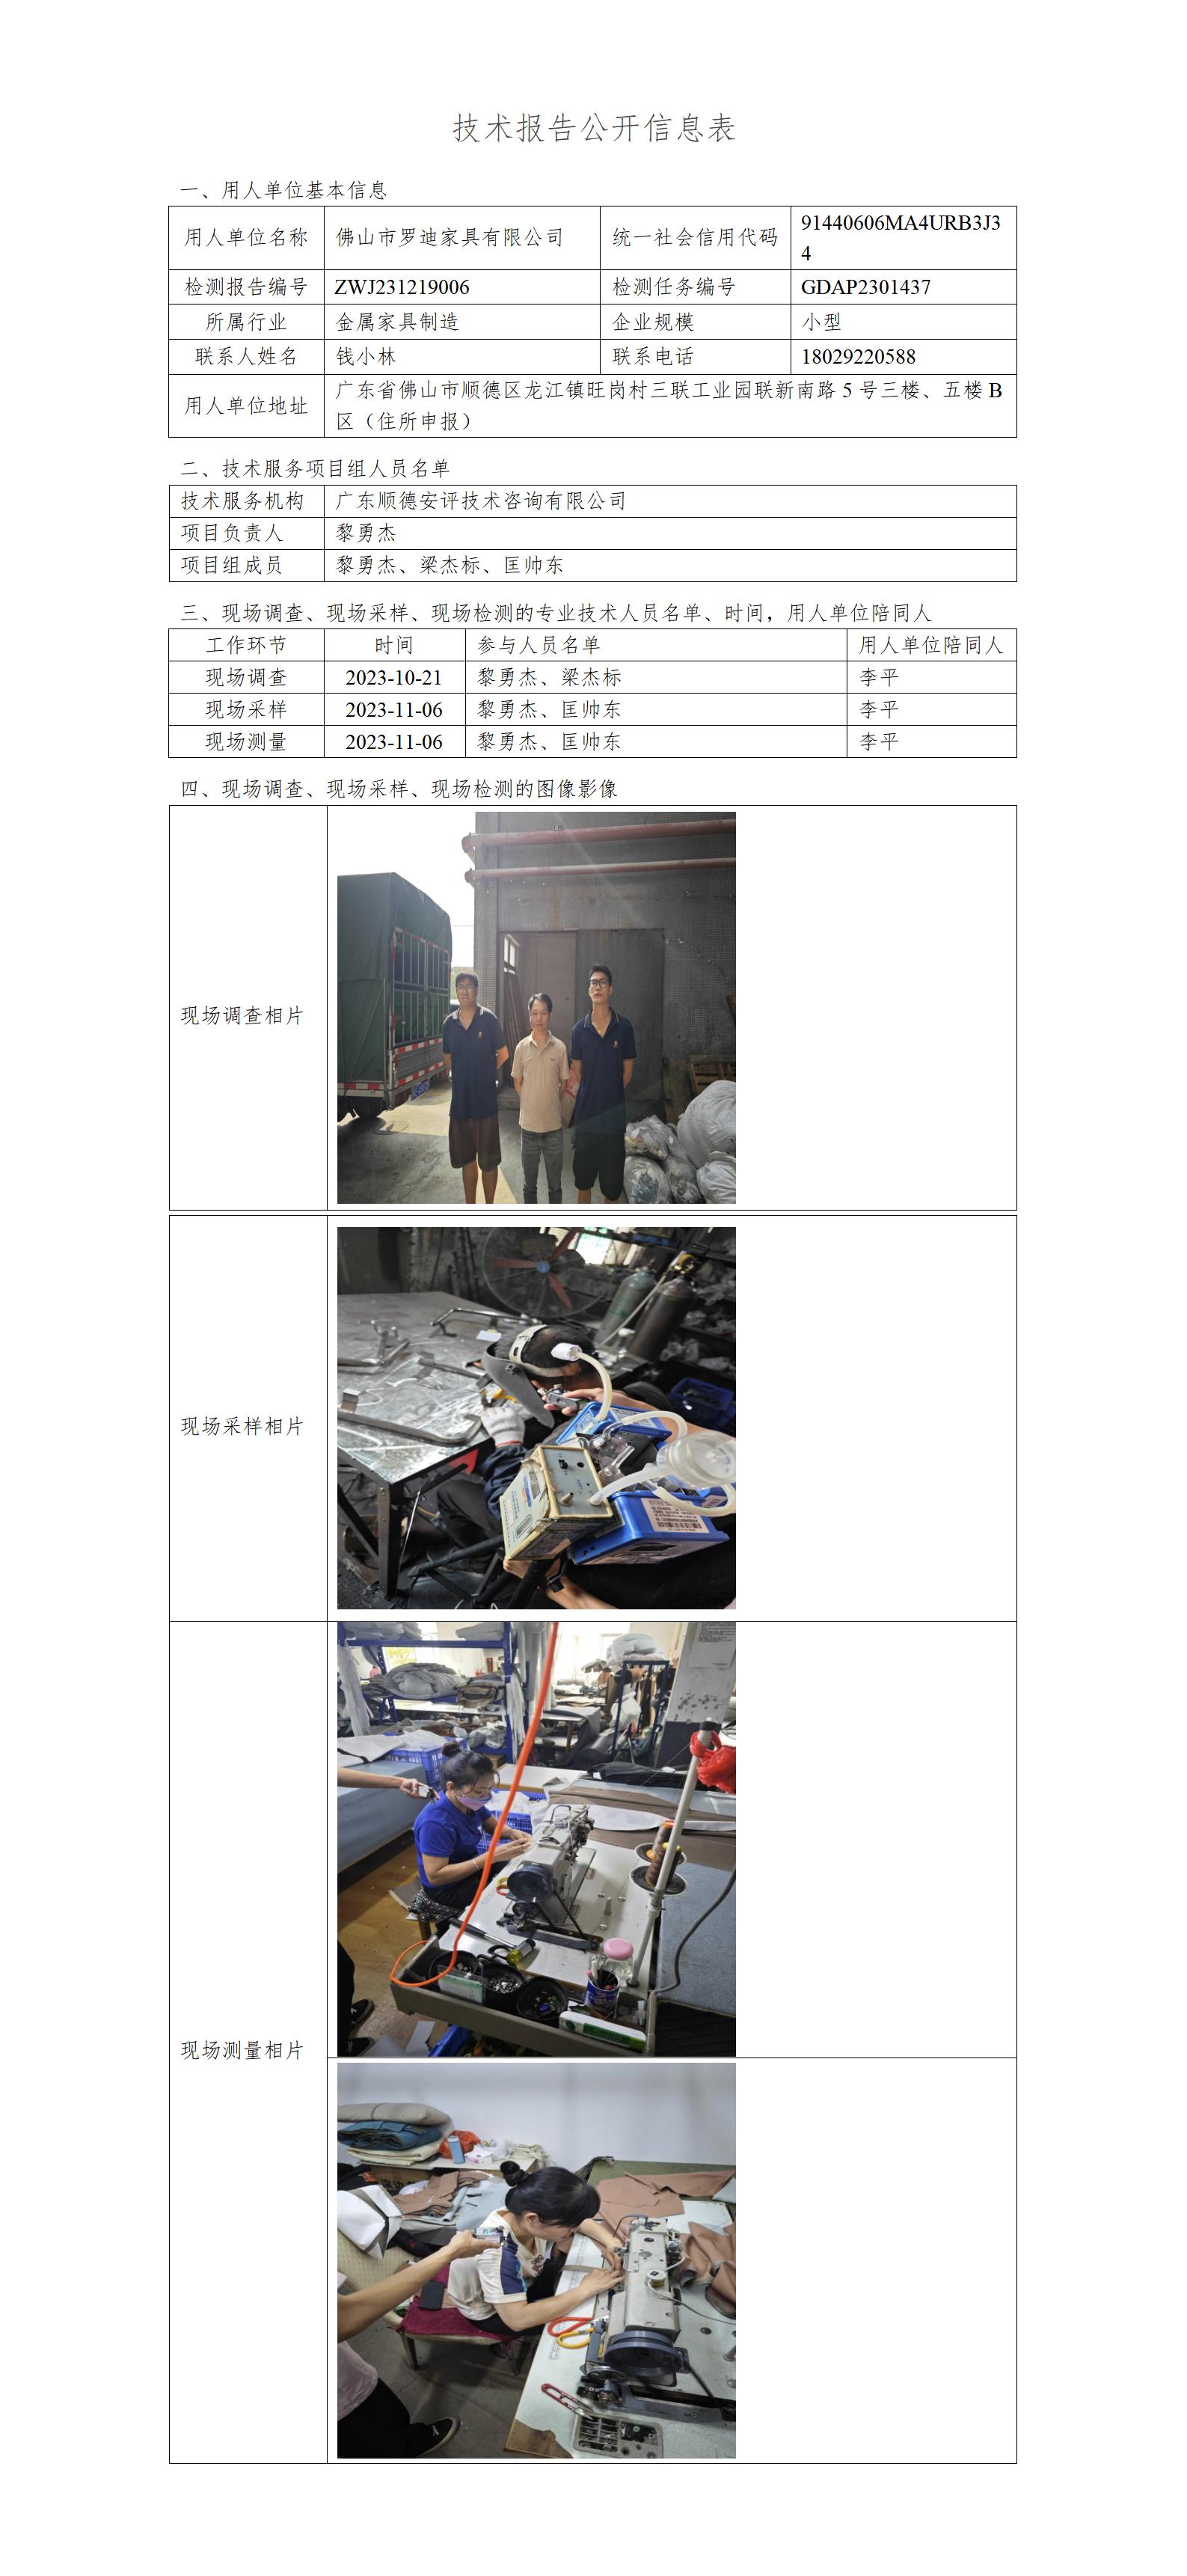 佛山市罗迪家具有限公司-2023-技术报告公开信息表_01.jpg